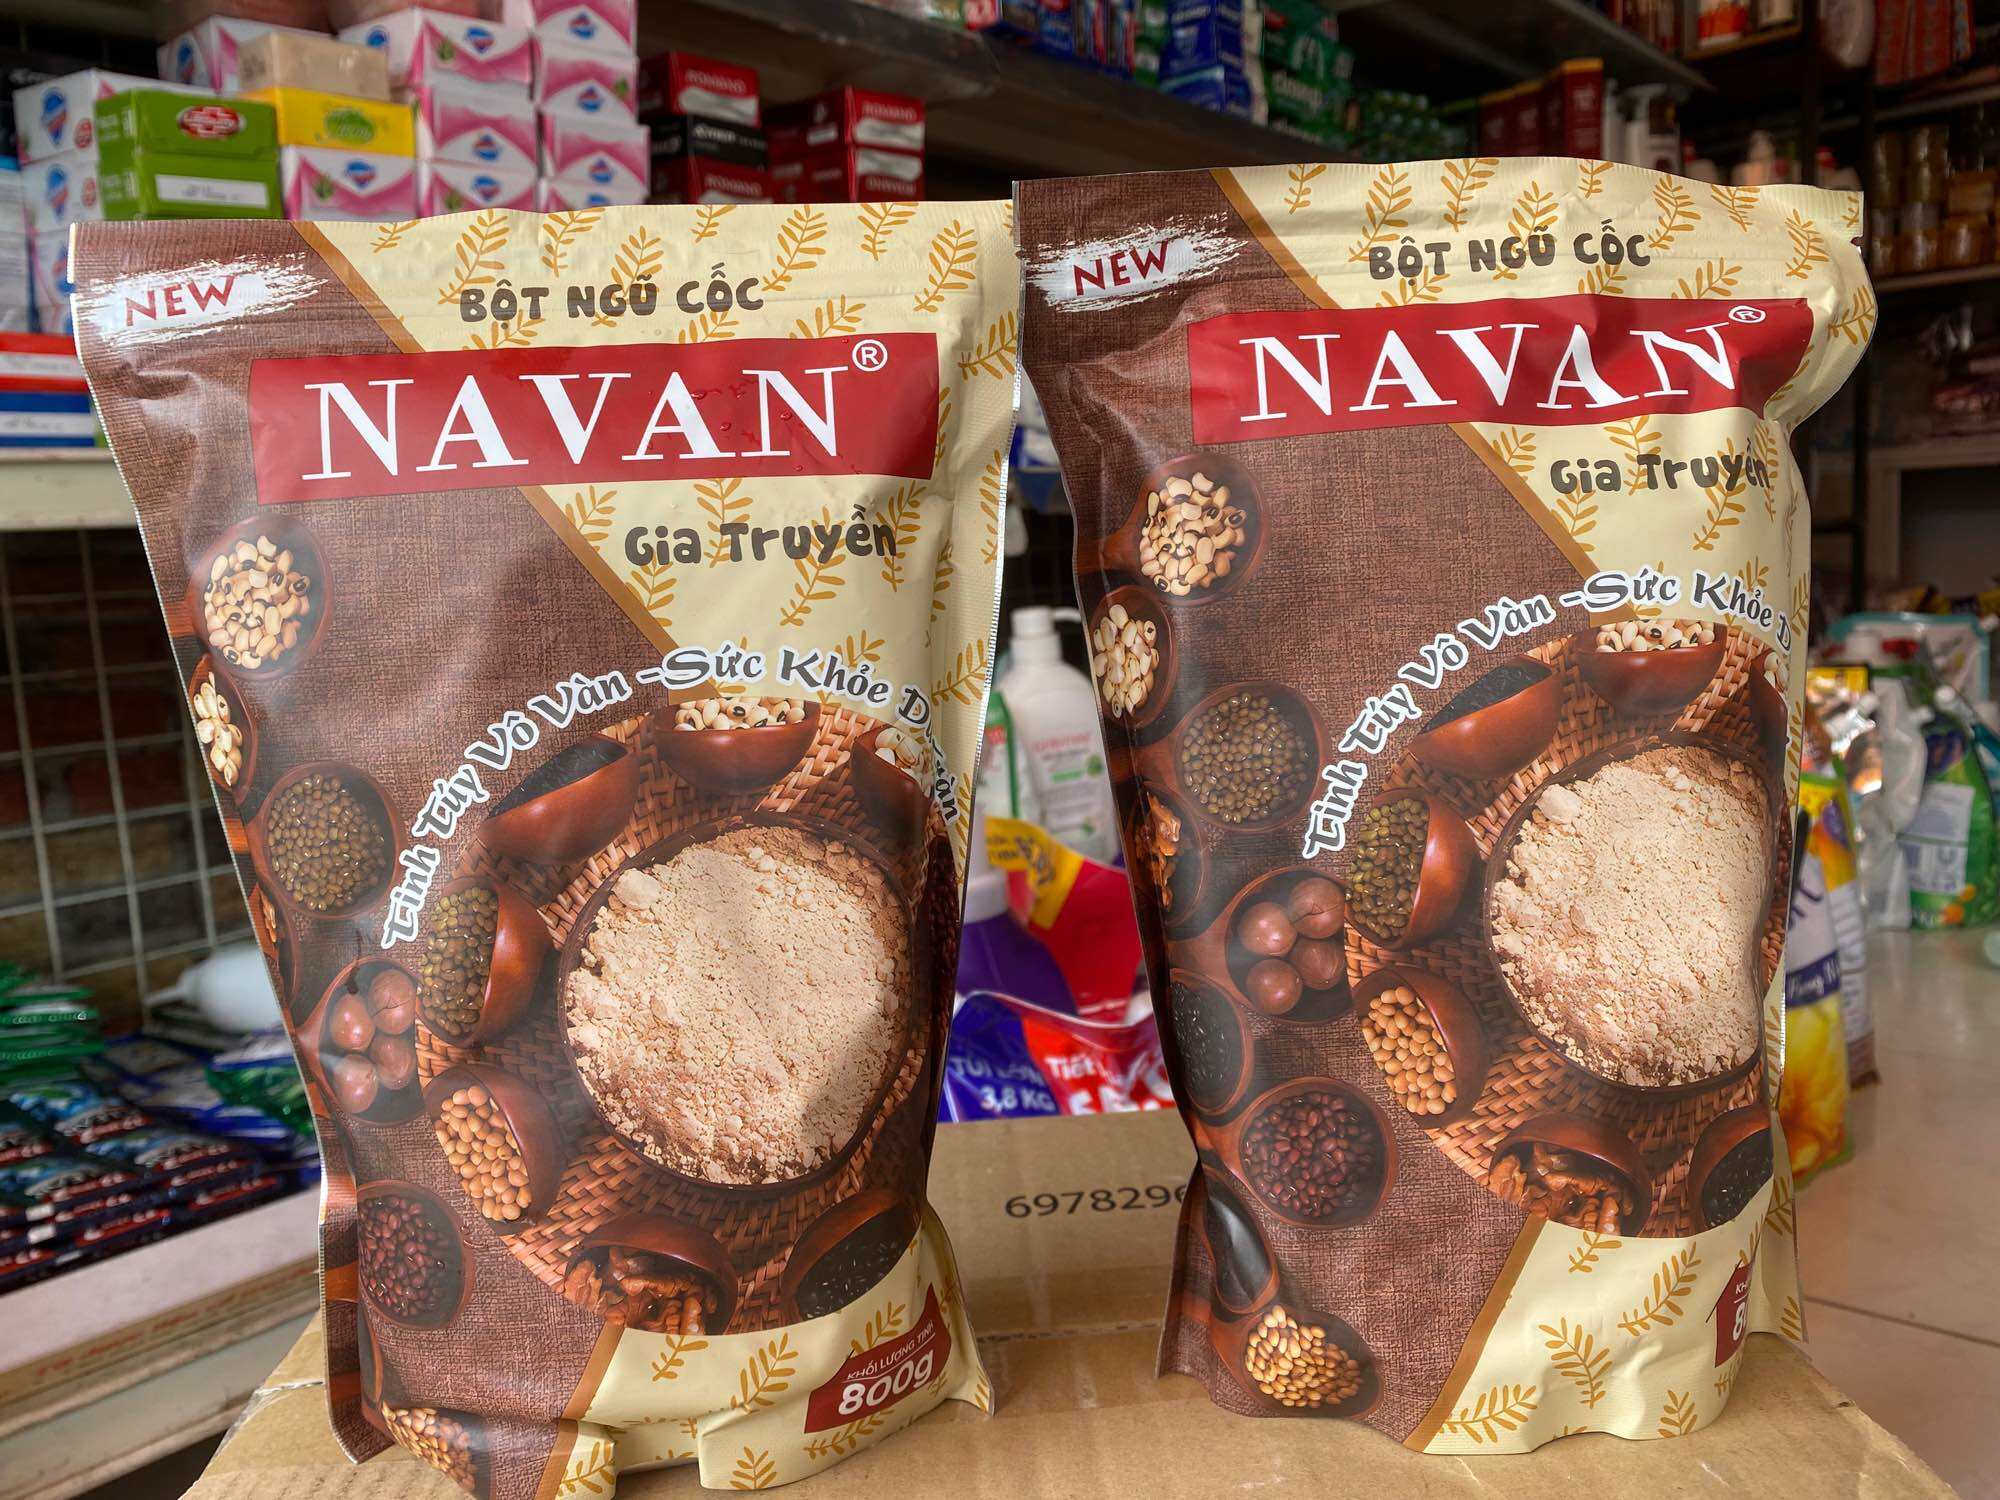 Bột ngũ cốc navan shop lệ quân